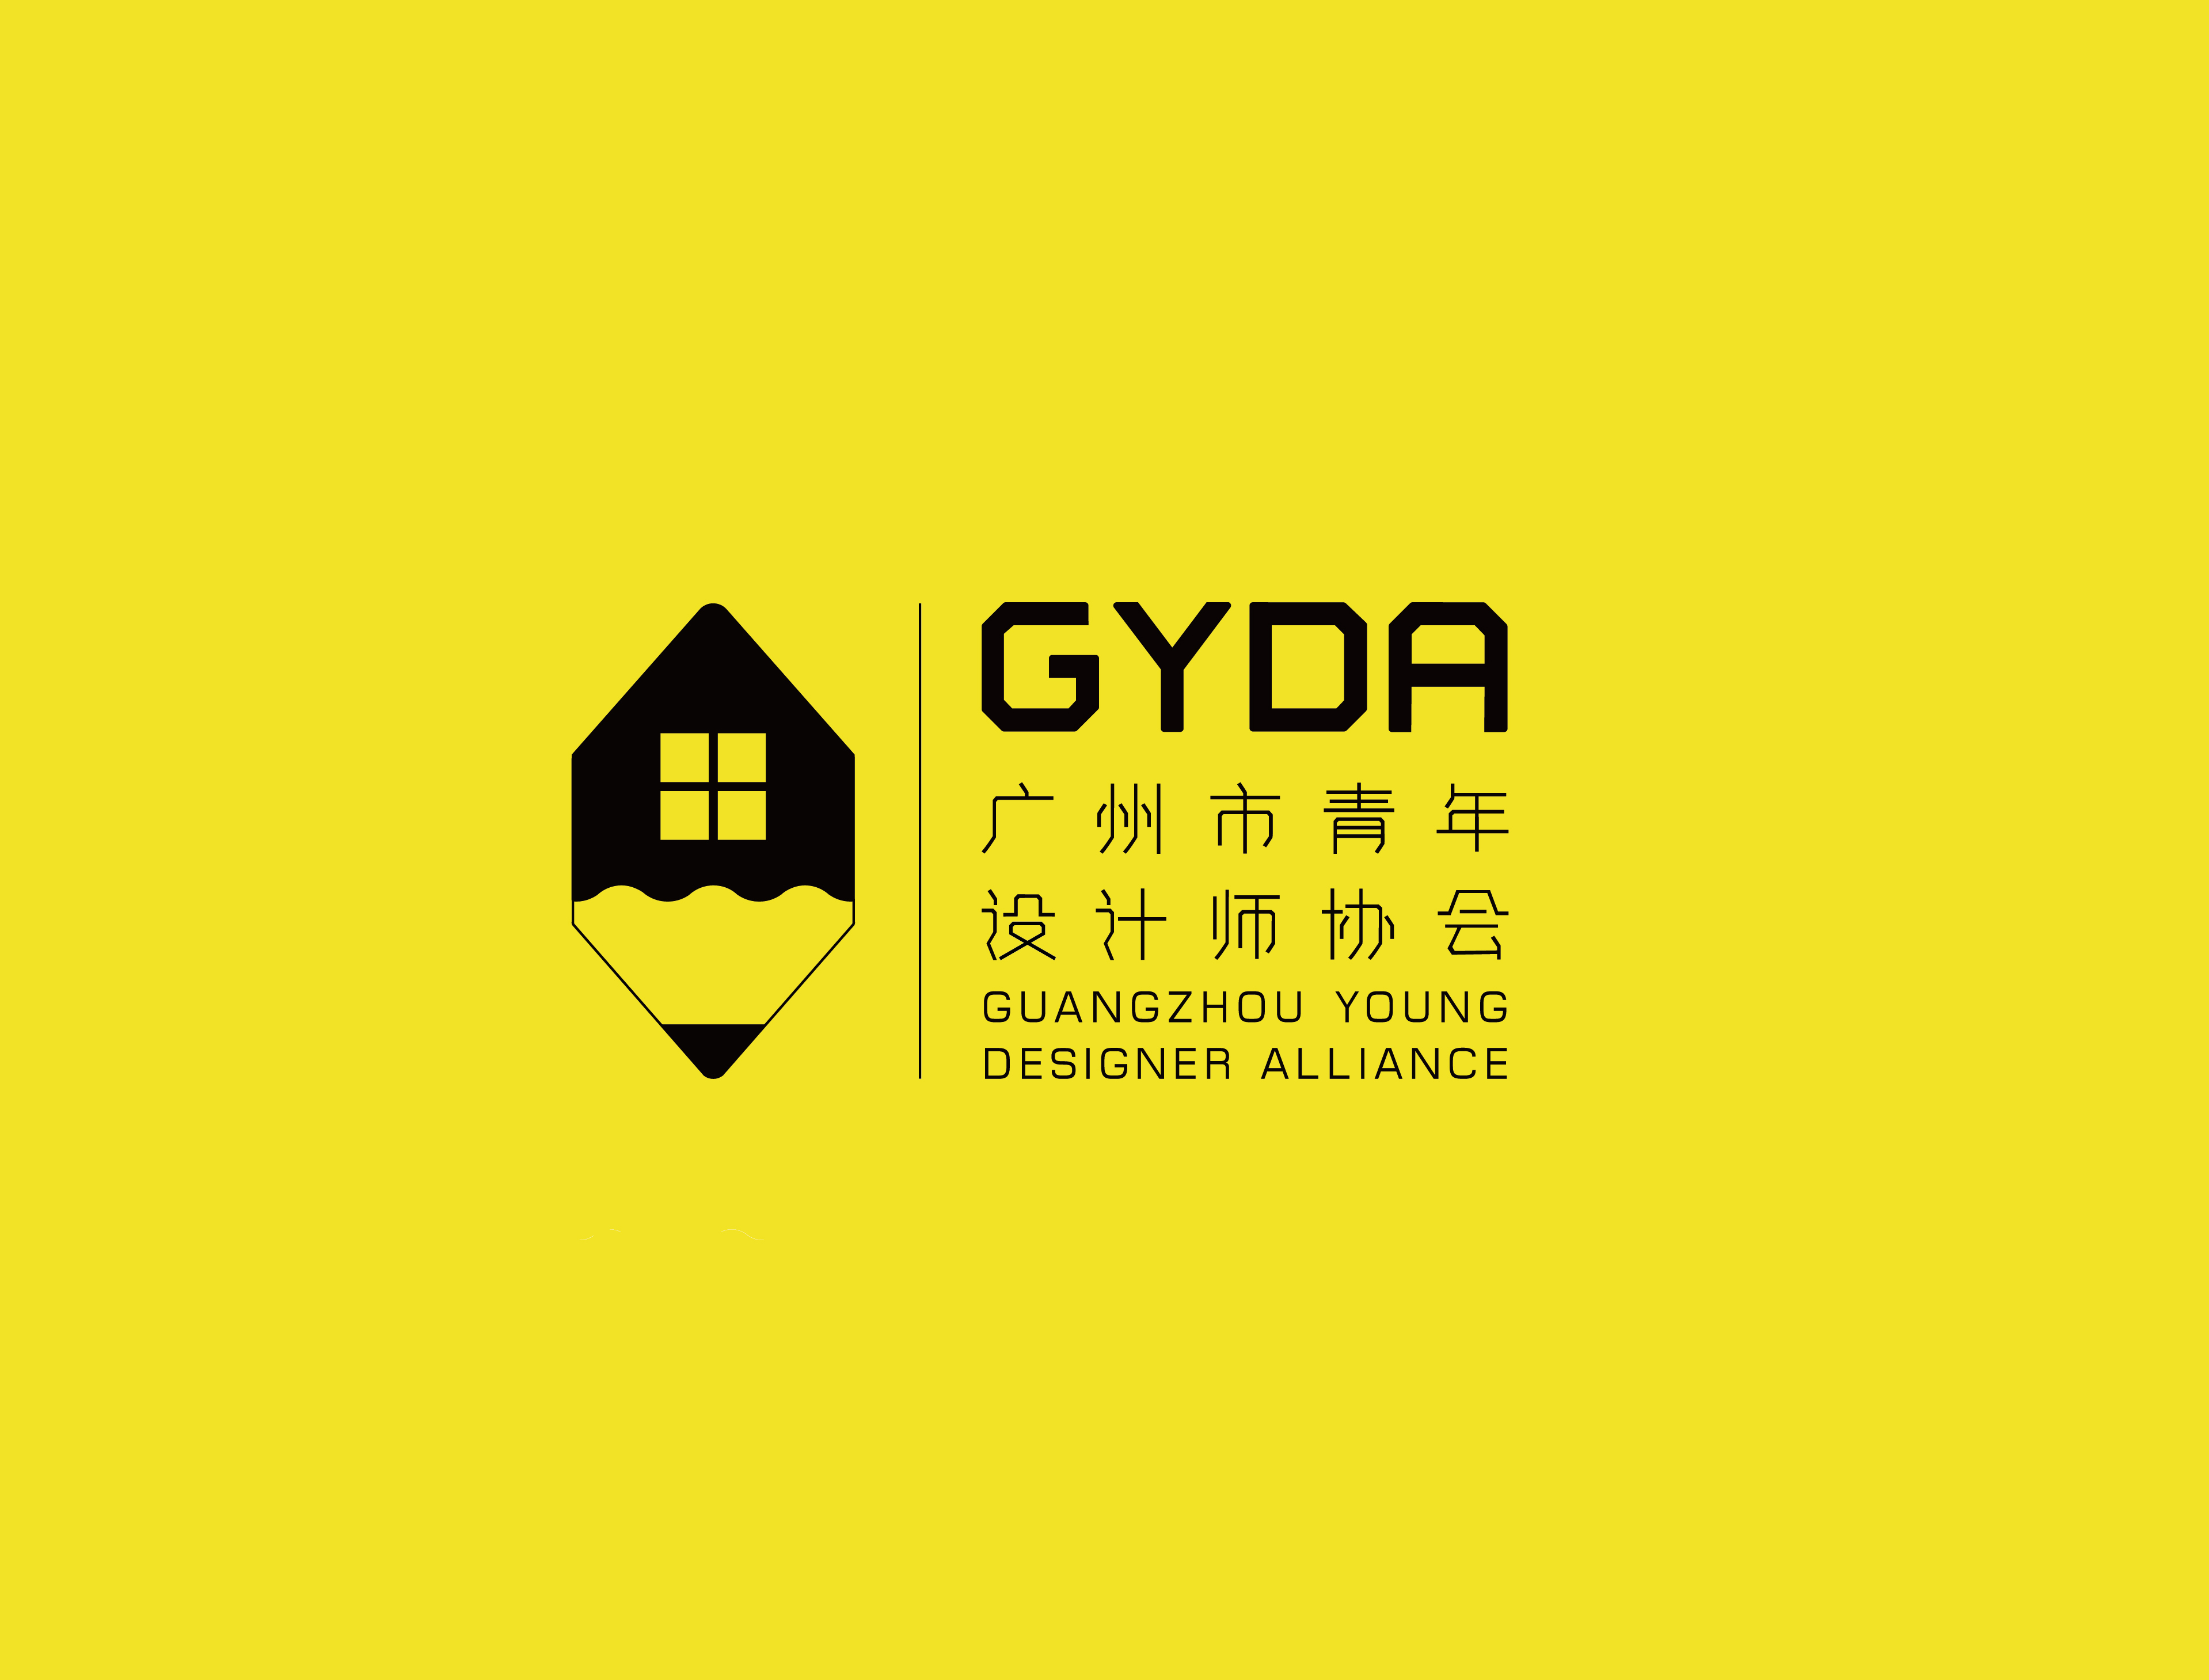 廣州市青年設計師協會